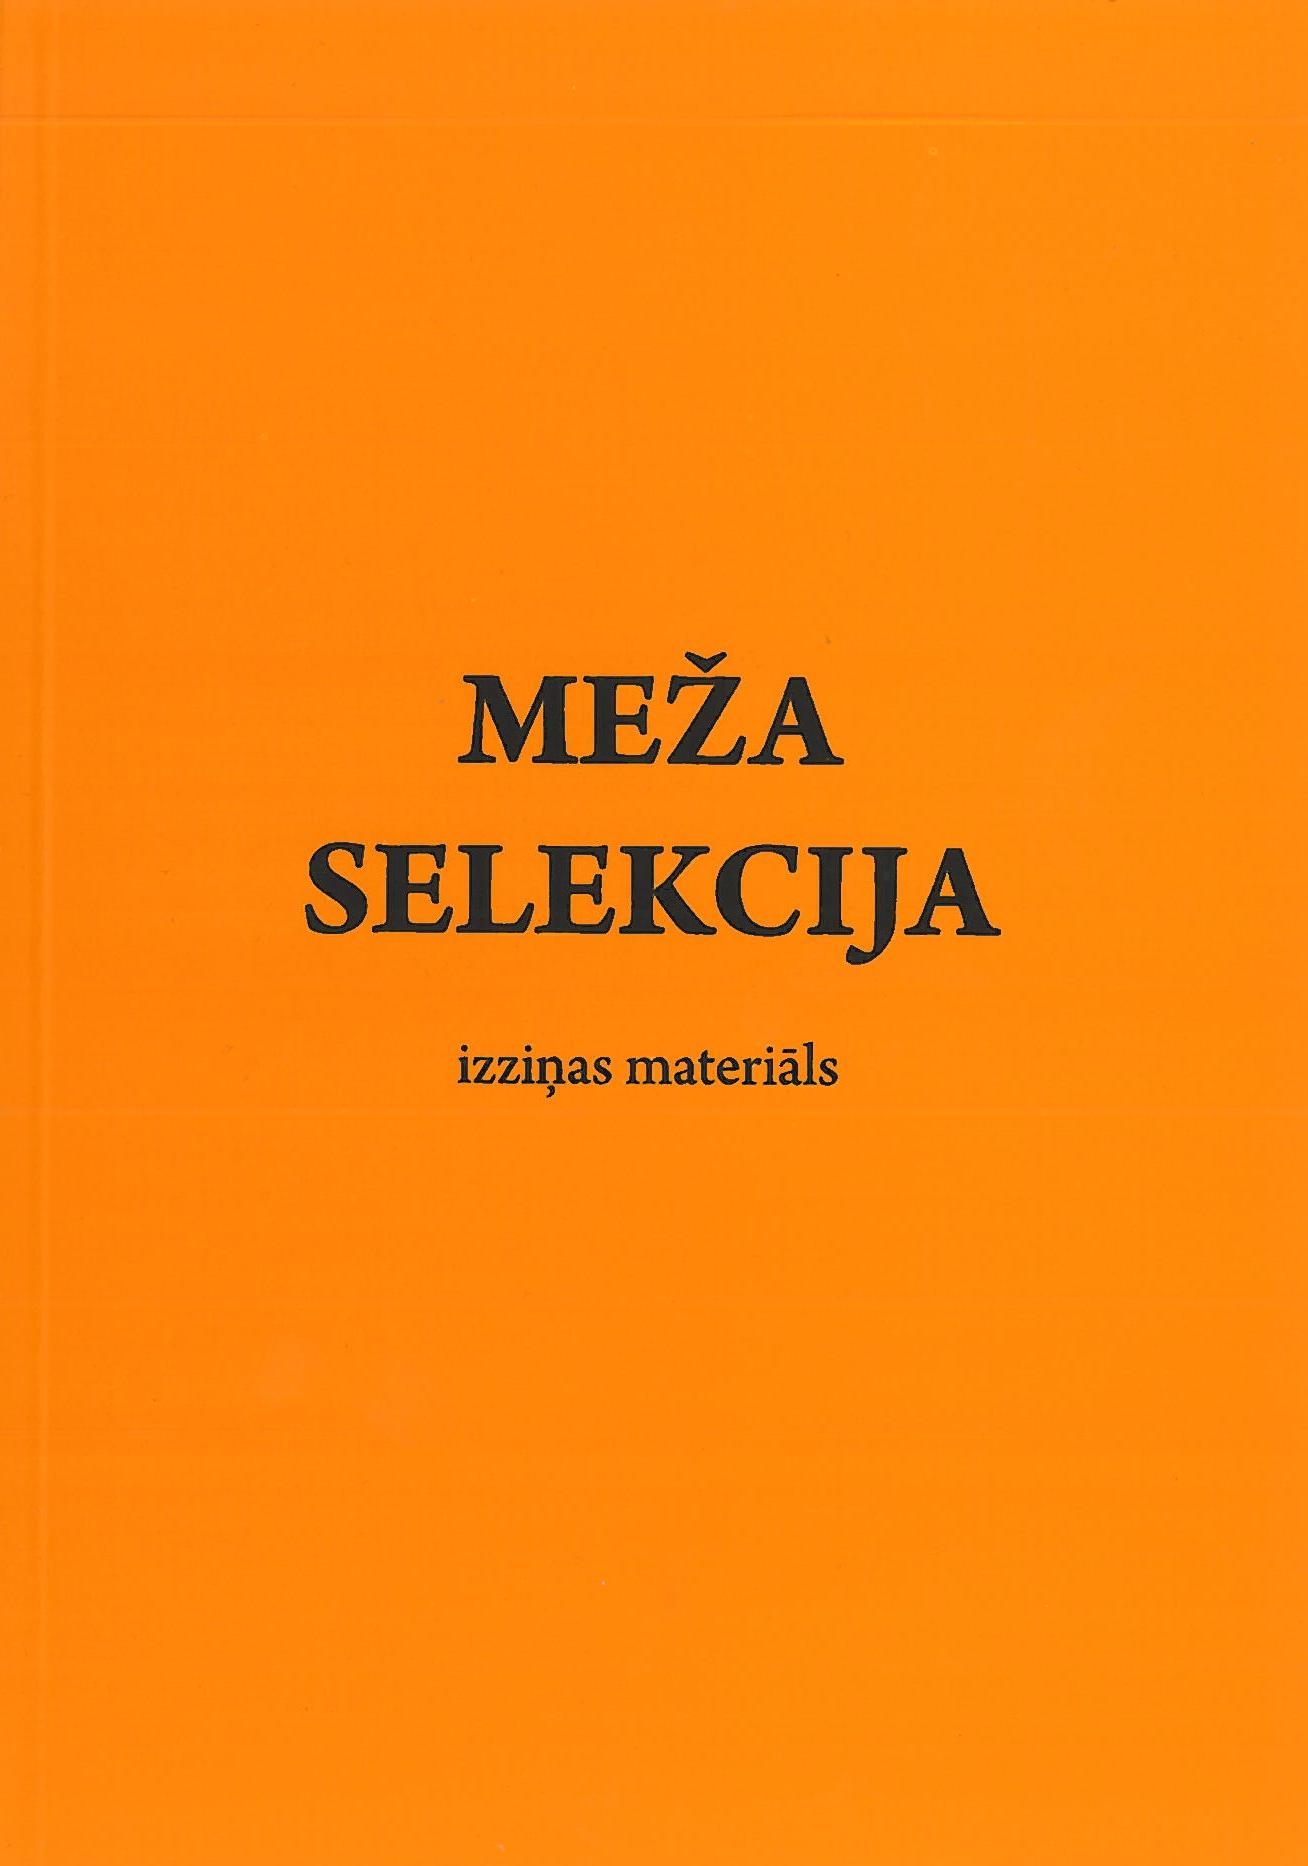 2012 Monografija I Meza selekcija vaks